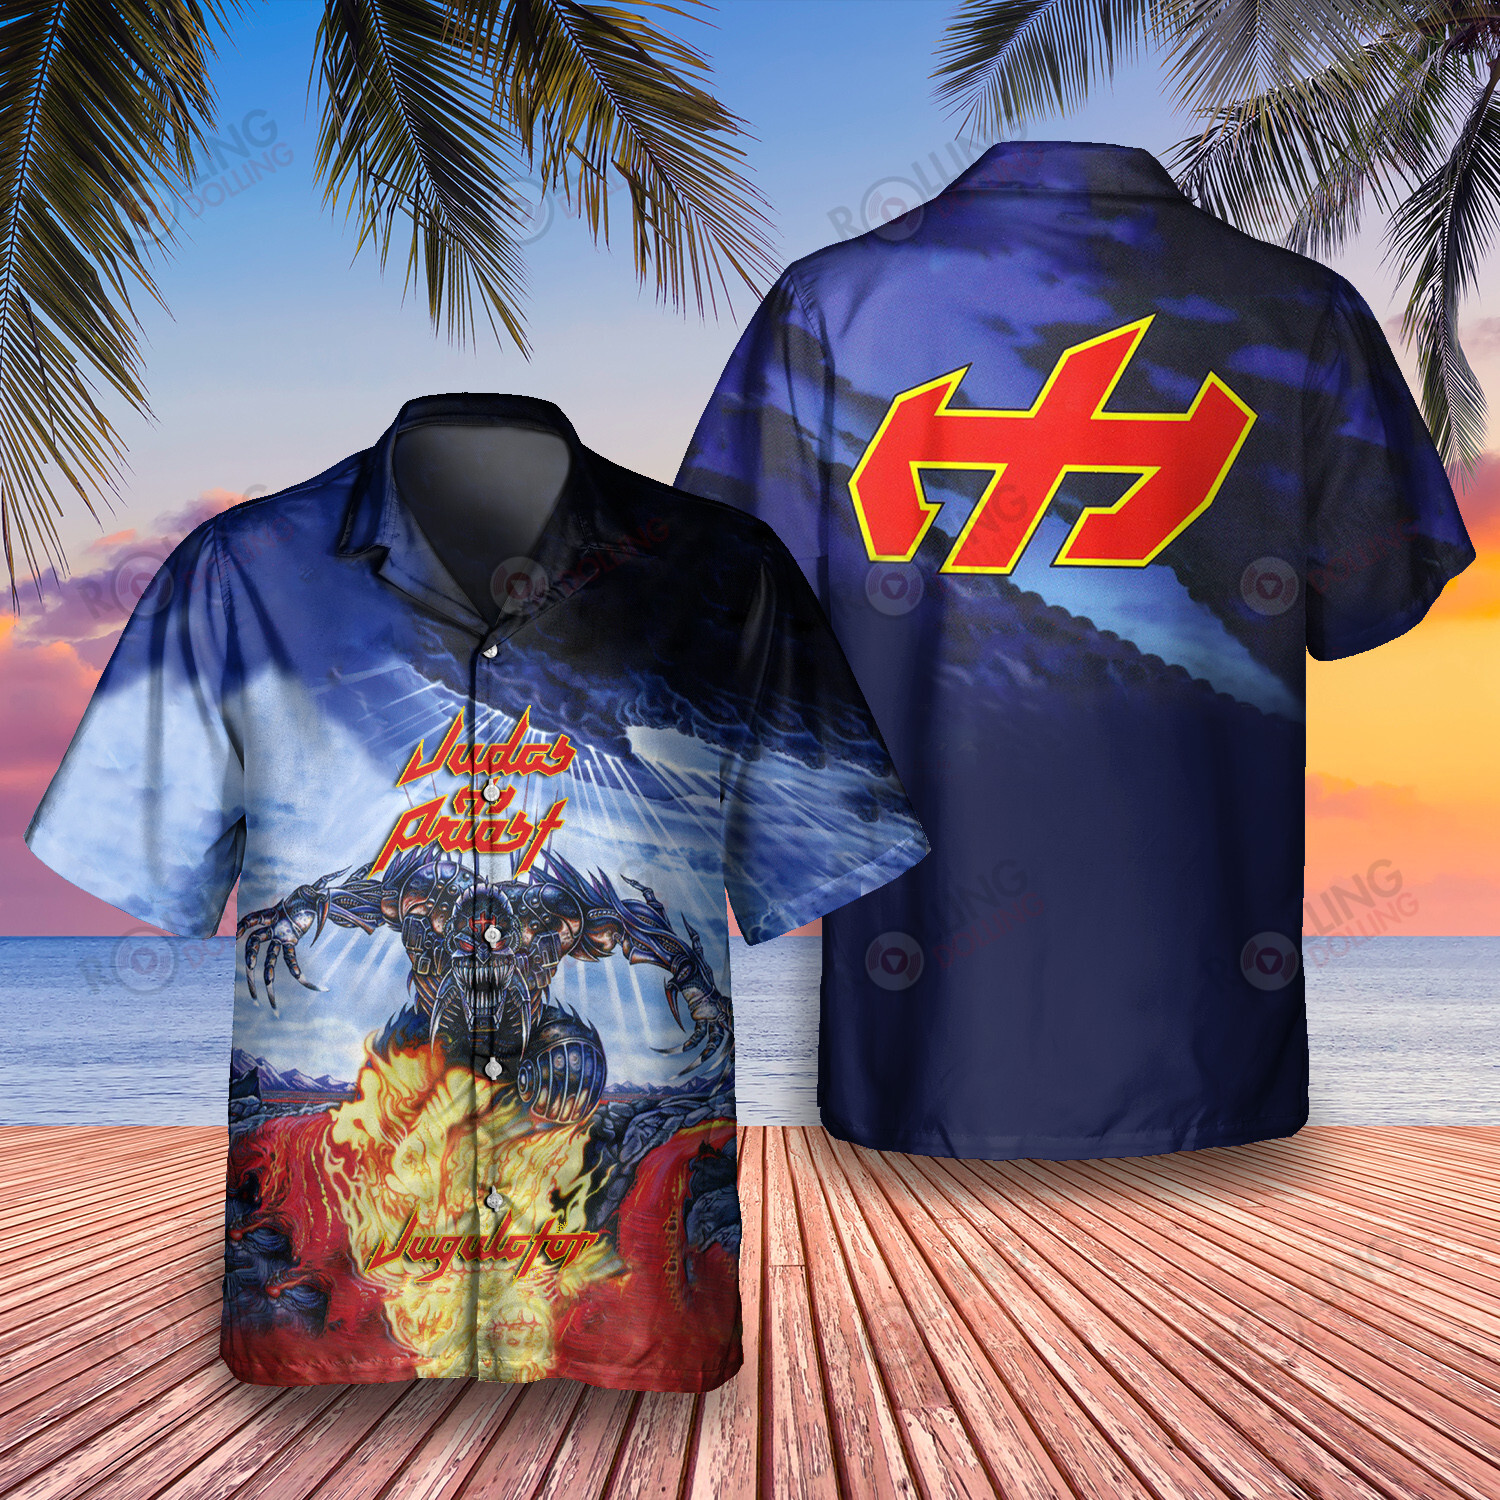 HOT Judas Priest Jugulator Album Tropical Shirt1